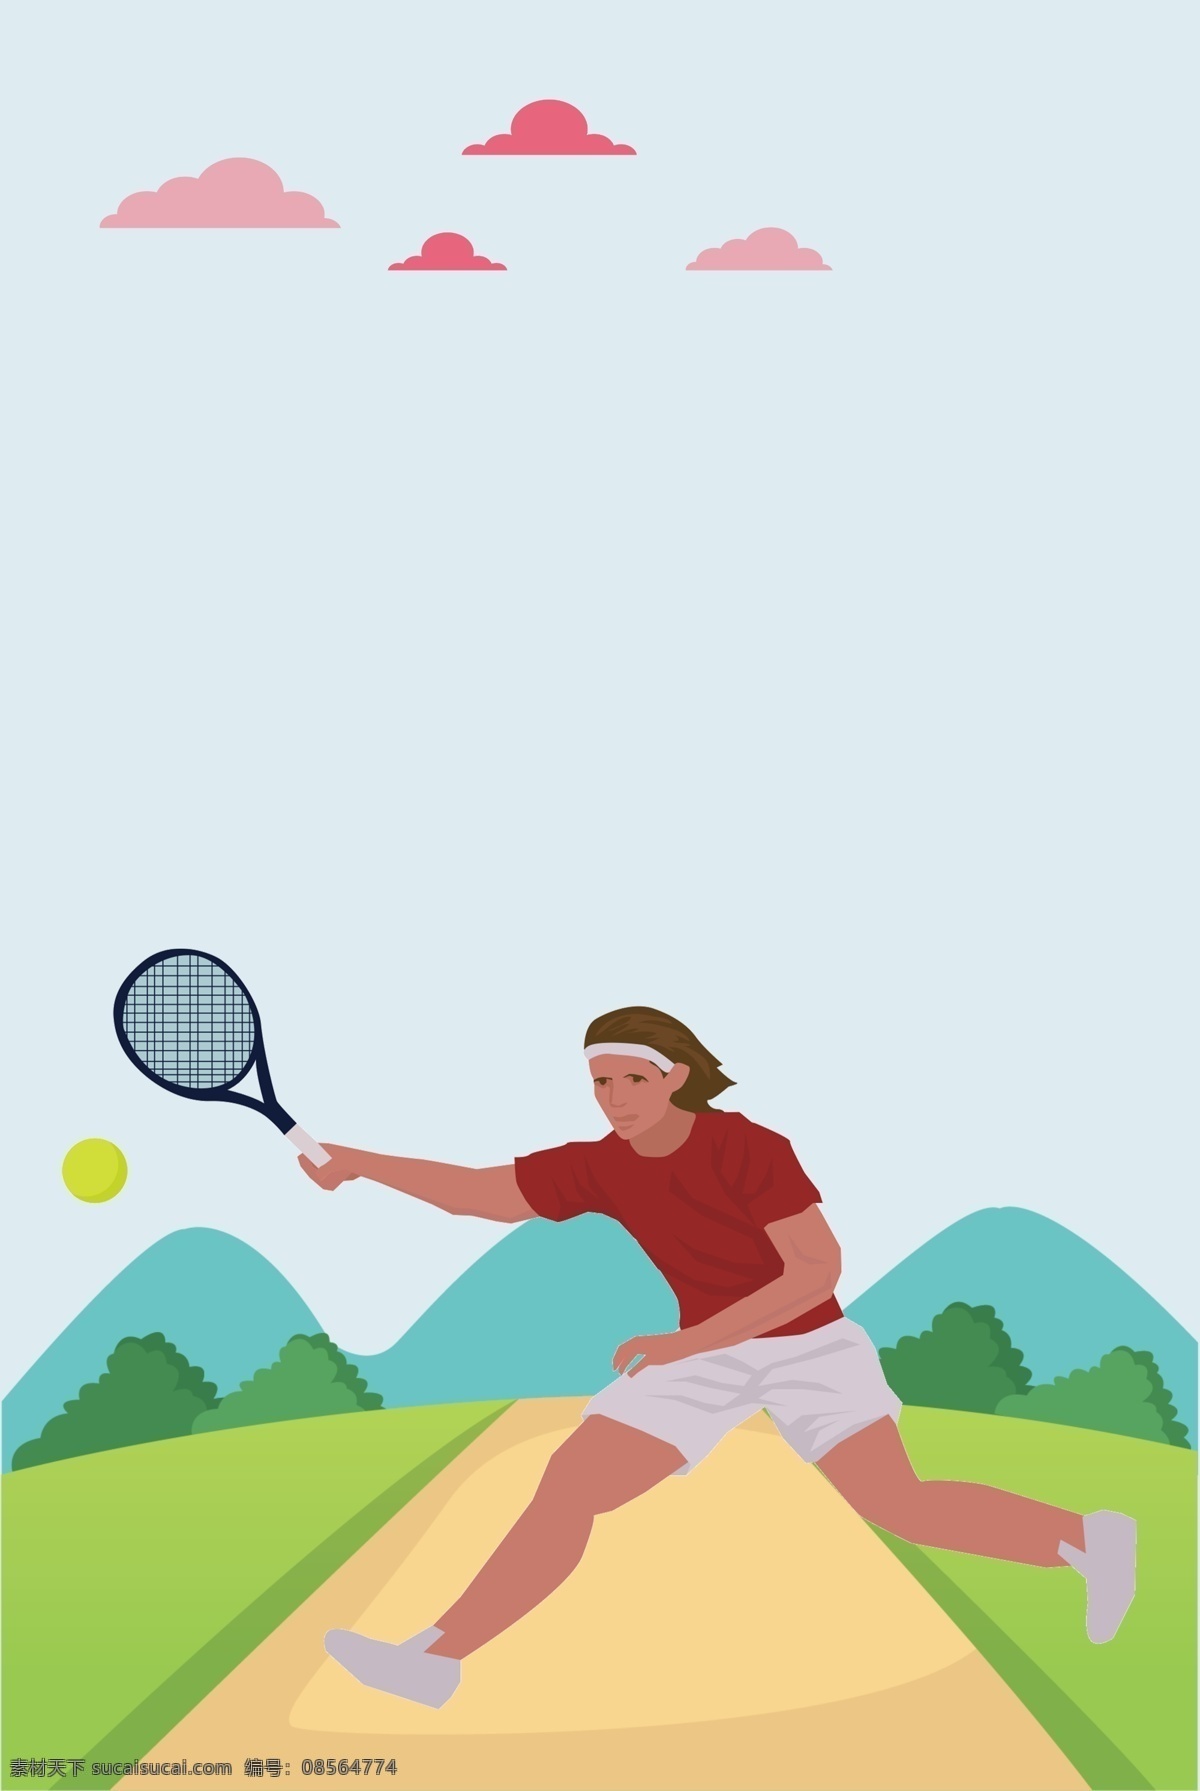 女子 网球 户外运动 场景 海报 女子打网球 郊外 手绘卡通 简约扁平插画 运动宣传 展板 背景